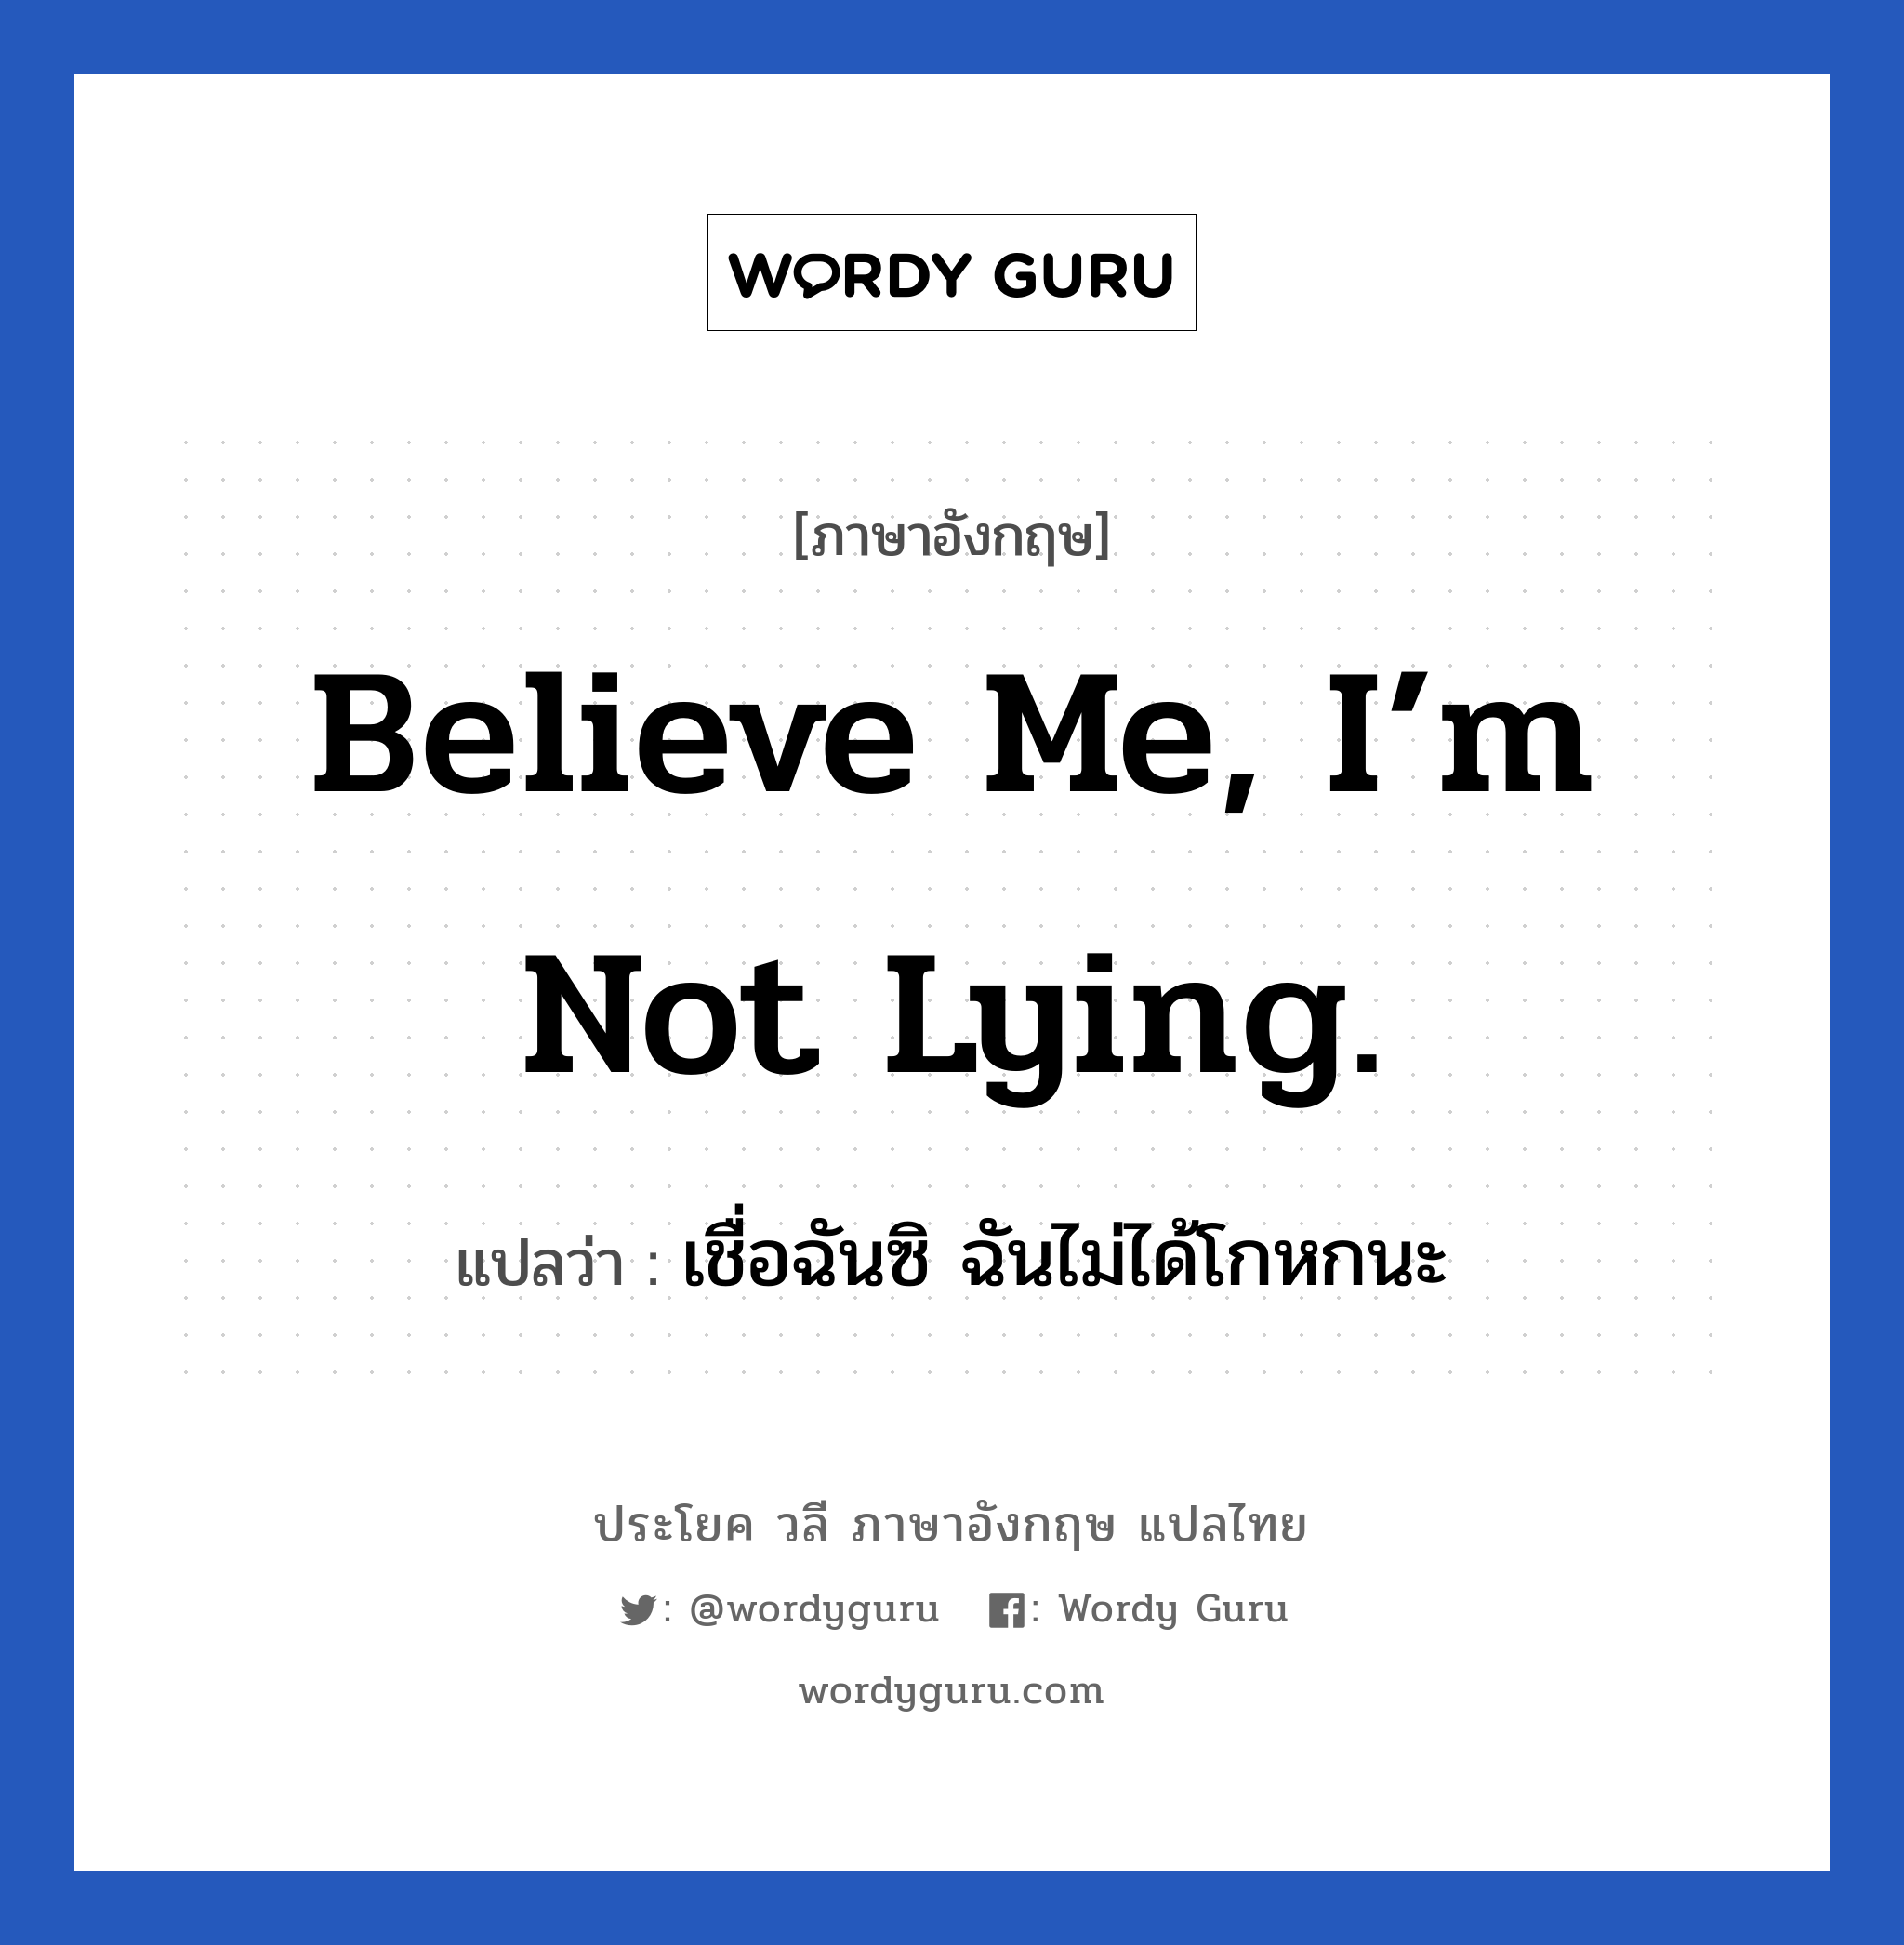 เชื่อฉันซิ ฉันไม่ได้โกหกนะ ภาษาอังกฤษ?, วลีภาษาอังกฤษ เชื่อฉันซิ ฉันไม่ได้โกหกนะ แปลว่า Believe me, I’m not lying.